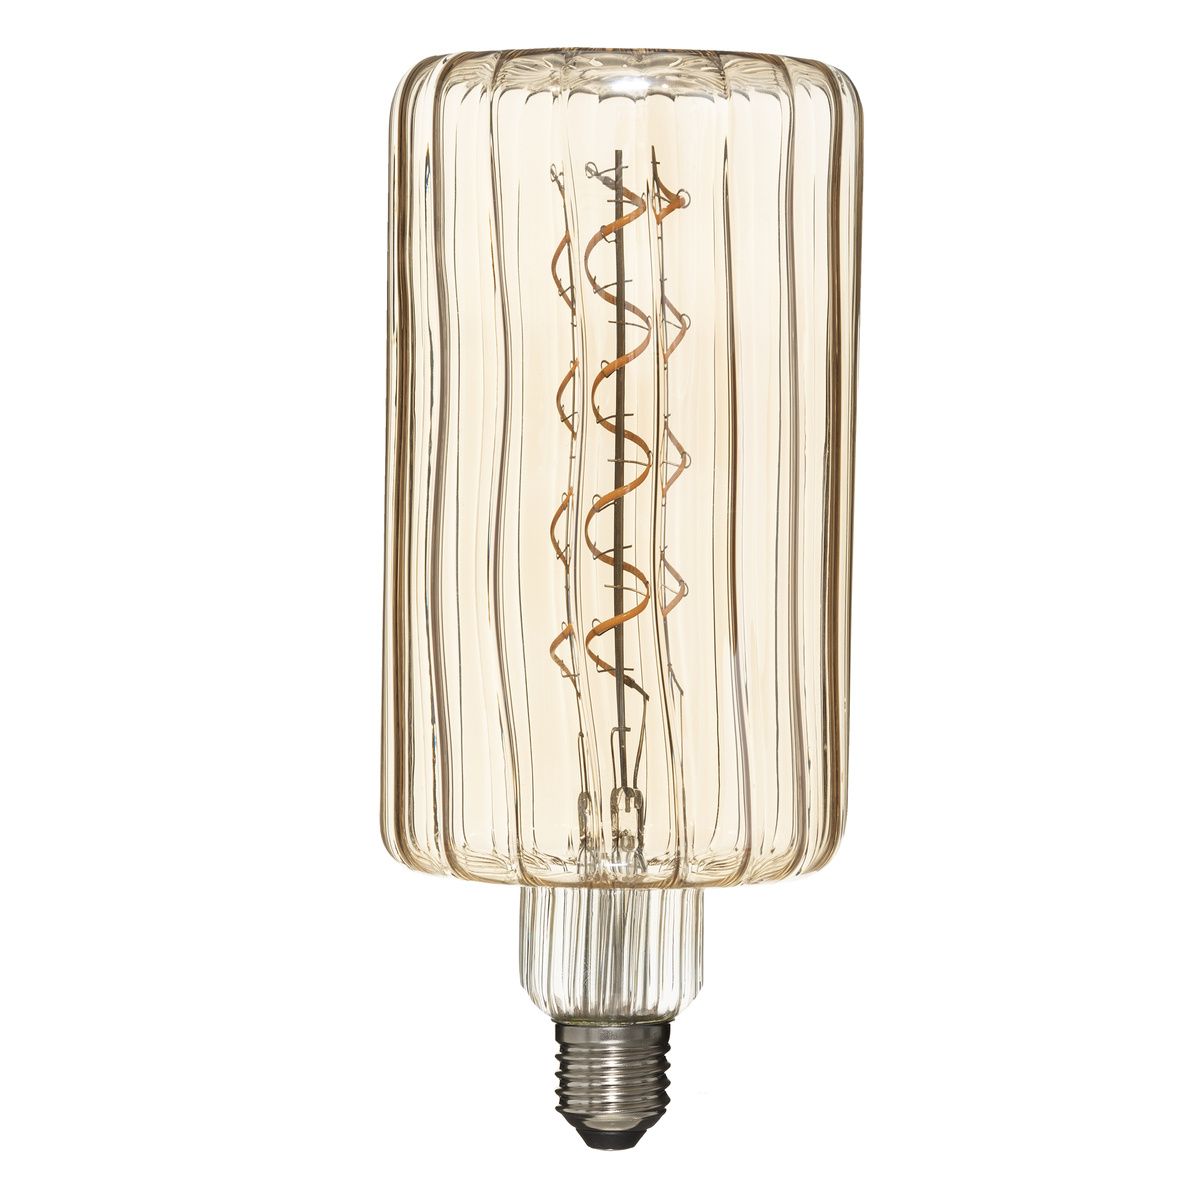 Atmosphera Designová žárovka LED, skleněná, jantarová - EMAKO.CZ s.r.o.